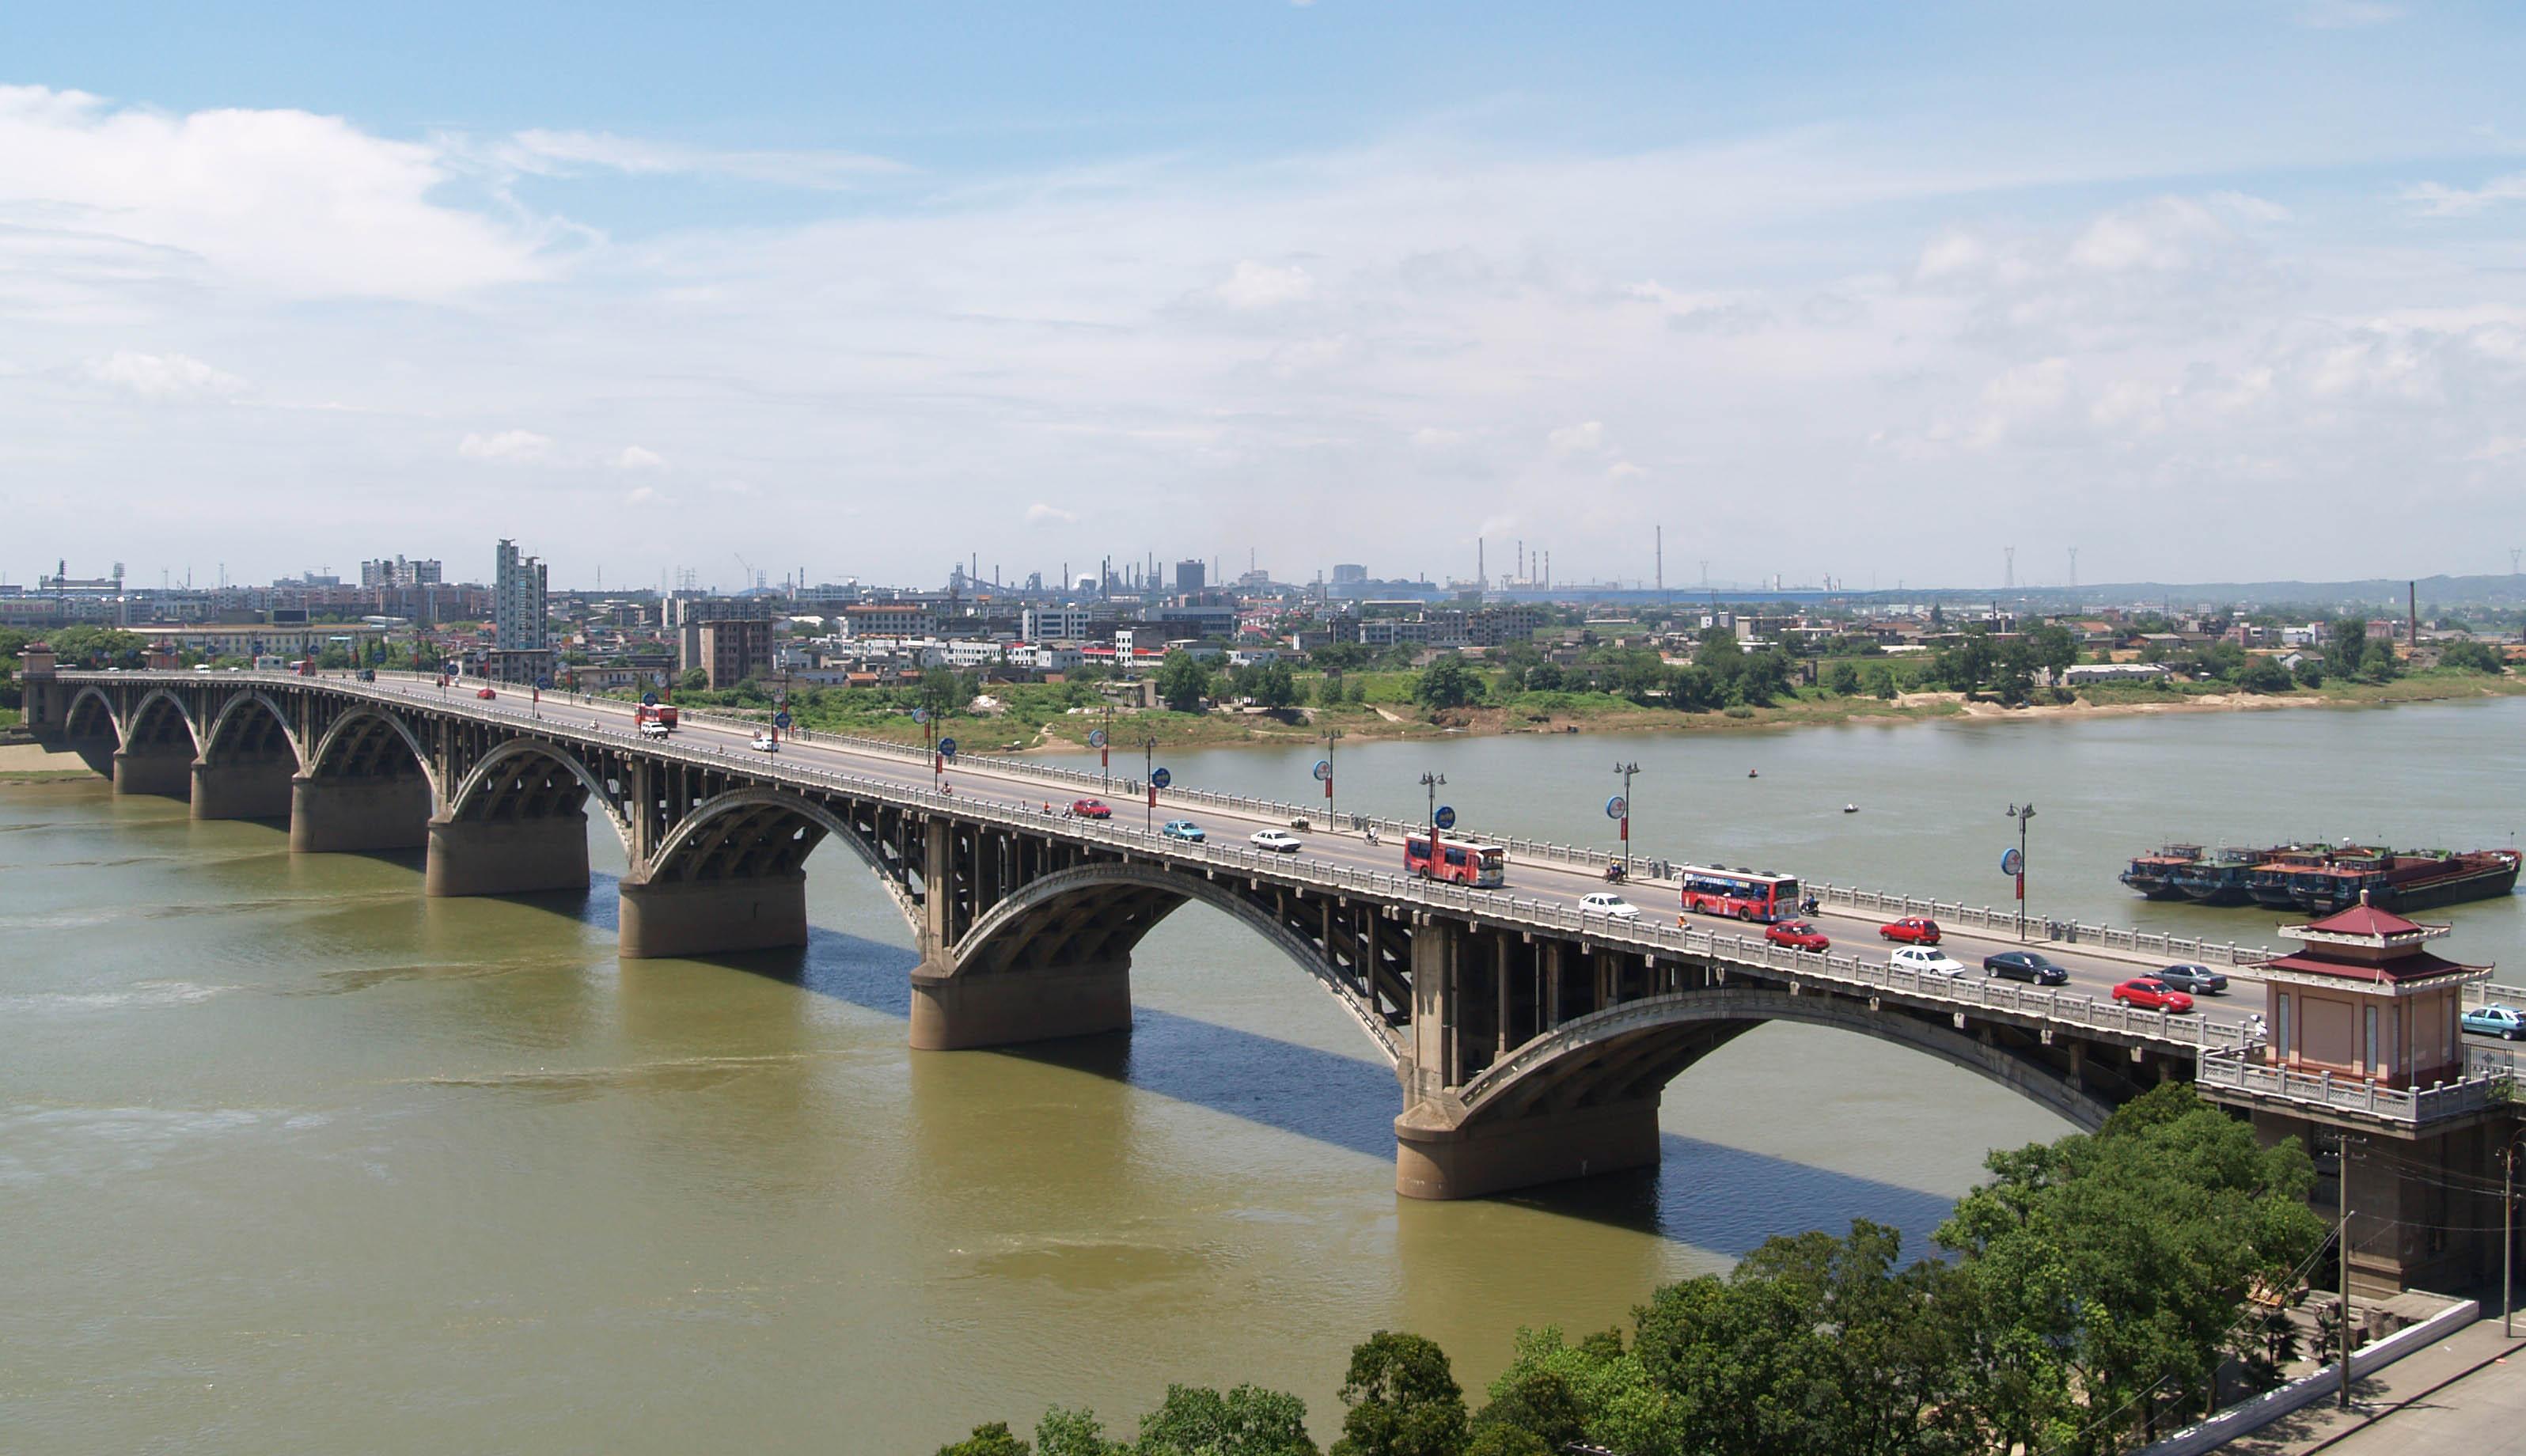 公司承建的湘潭一大橋工程被譽為“千里湘江第一橋”，比長沙市的第一座湘江大橋還早10年，一直以來是湘潭市標志性建筑